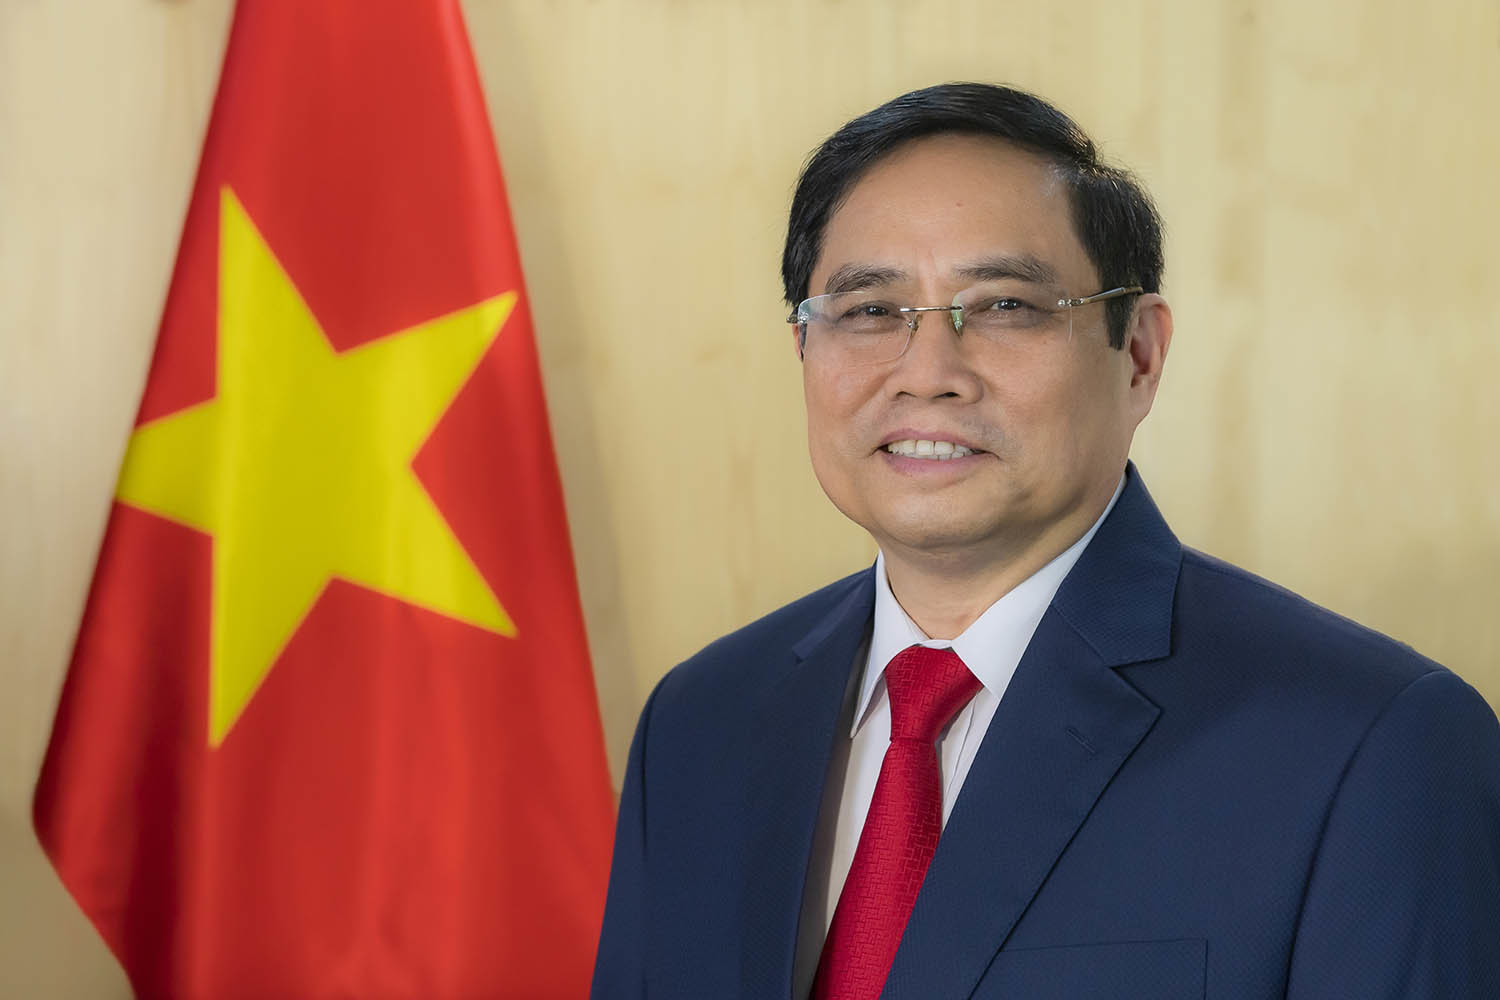 Thủ tướng Phạm Minh Chính thăm chính thức Campuchia, dự hội nghị cấp cao ASEAN - Ảnh 1.